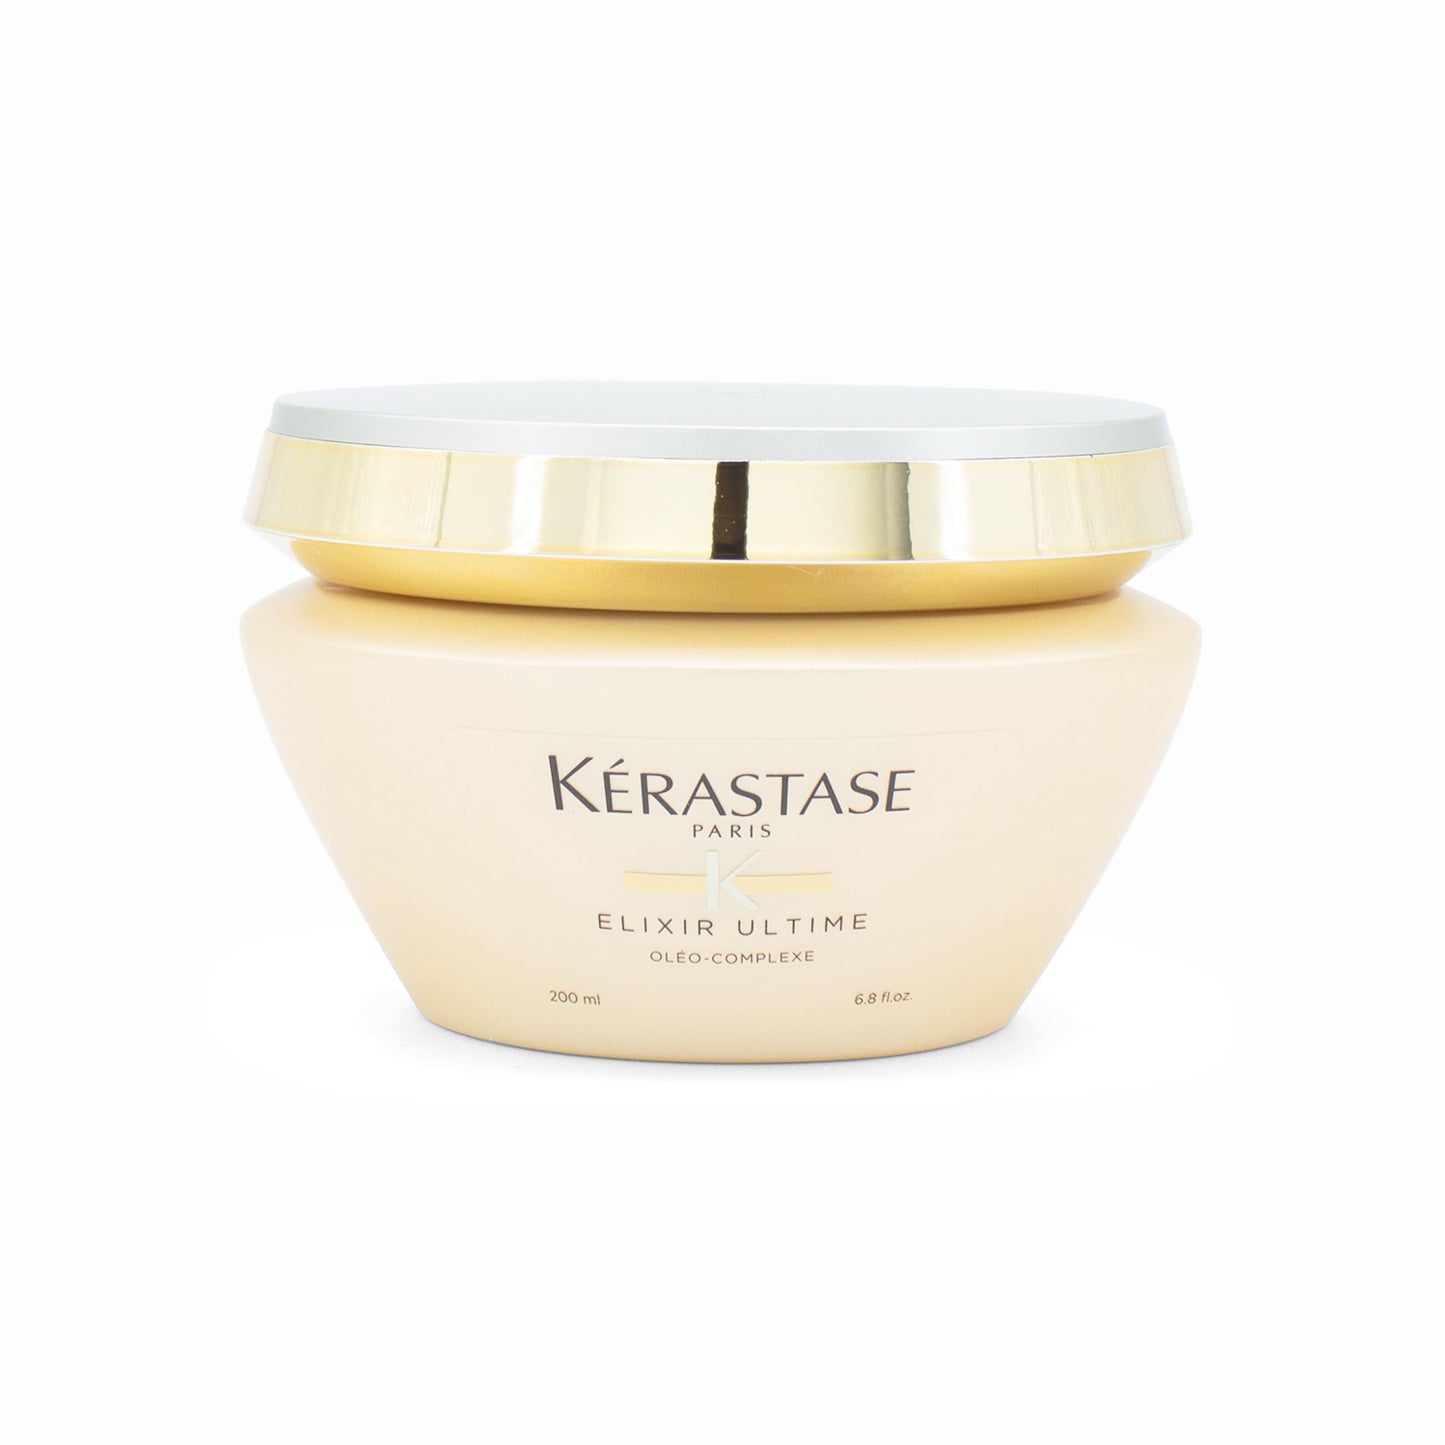 KERASTASE Elixir Ultime Beautifying Oil Masque 6.8oz - New